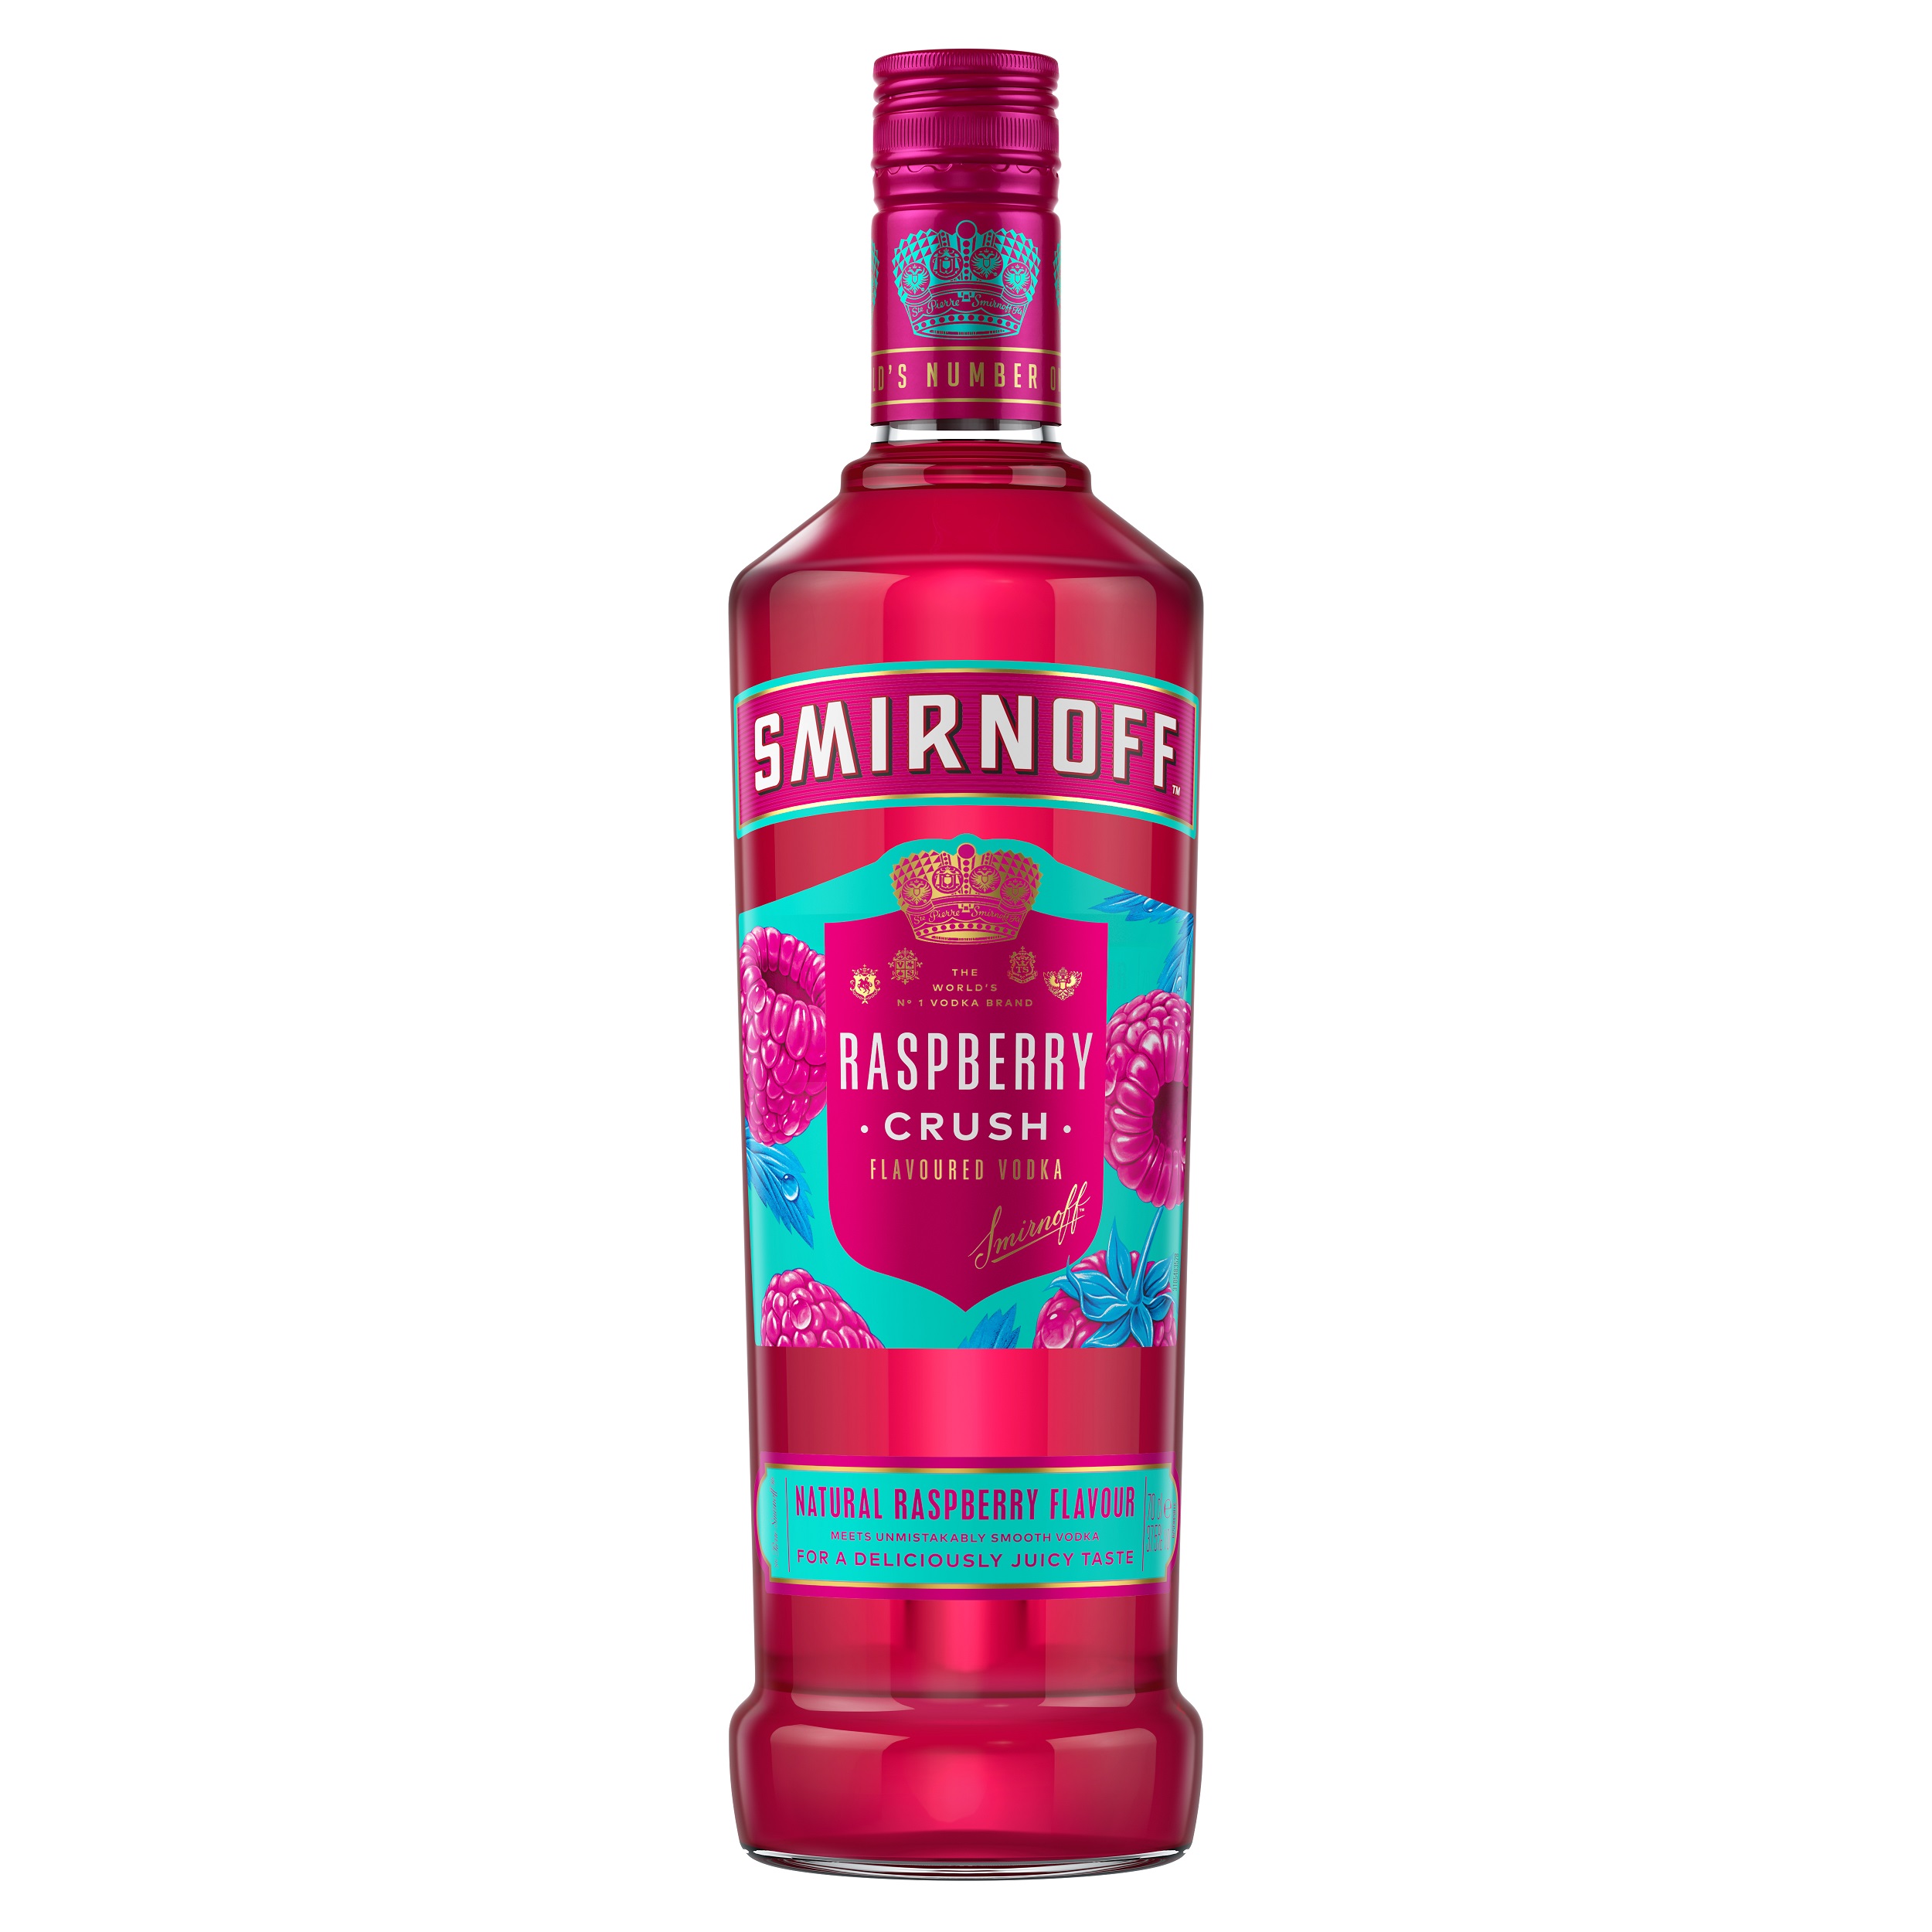 Smirnoff launches ‘Raspberry Crush’ flavoured vodka